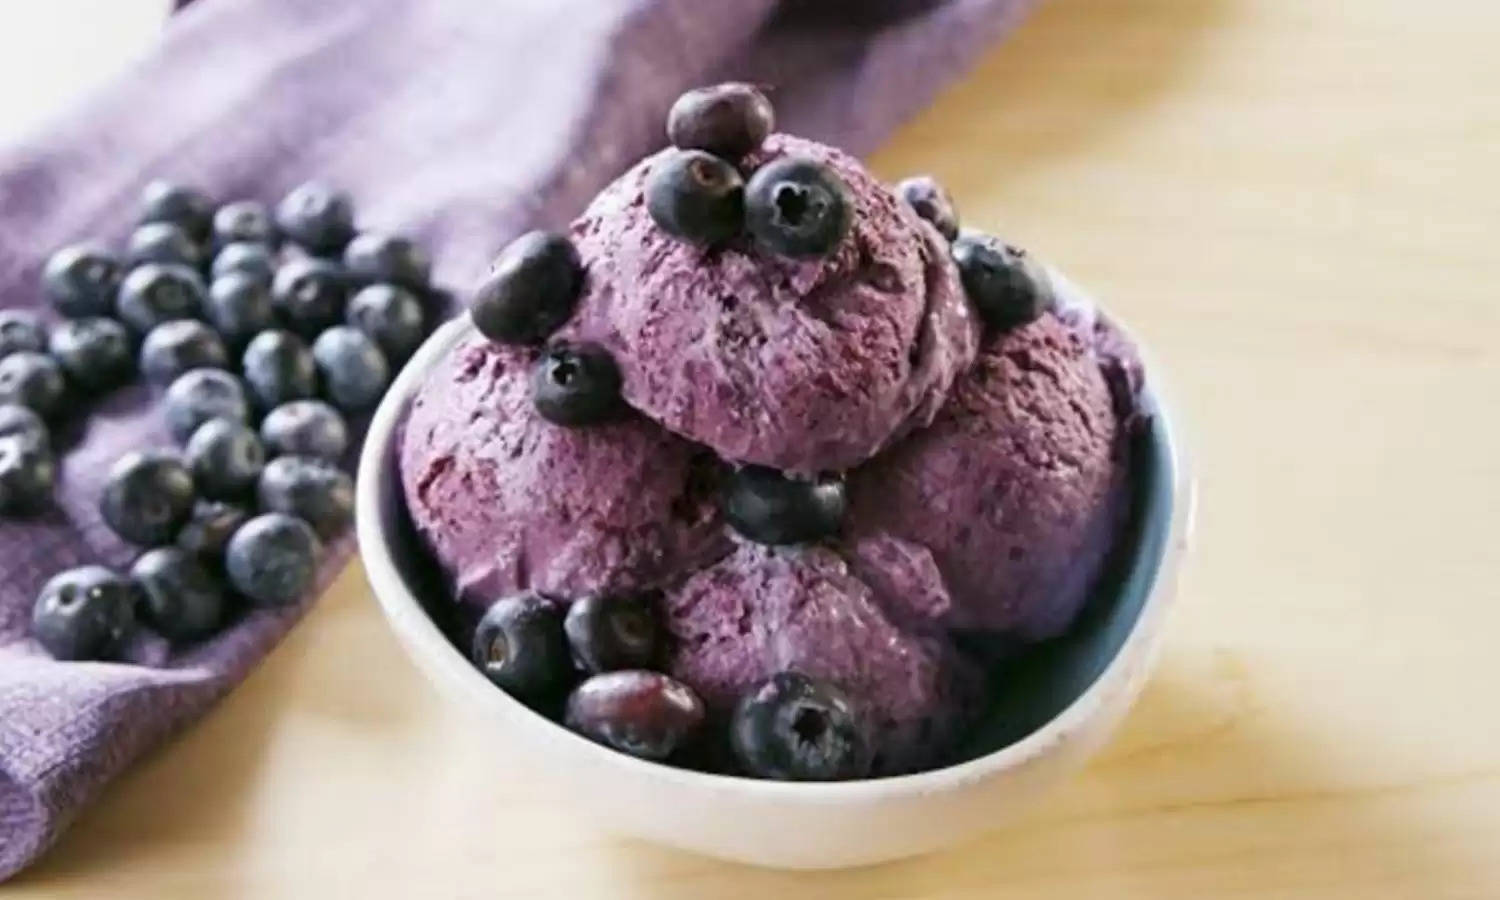 Berry Icecream: ठंडा खाने वालों के लिए परफेक्ट है यह घर की बनी बेरी आइसक्रीम, नोट करें बनाने की रेसिपी